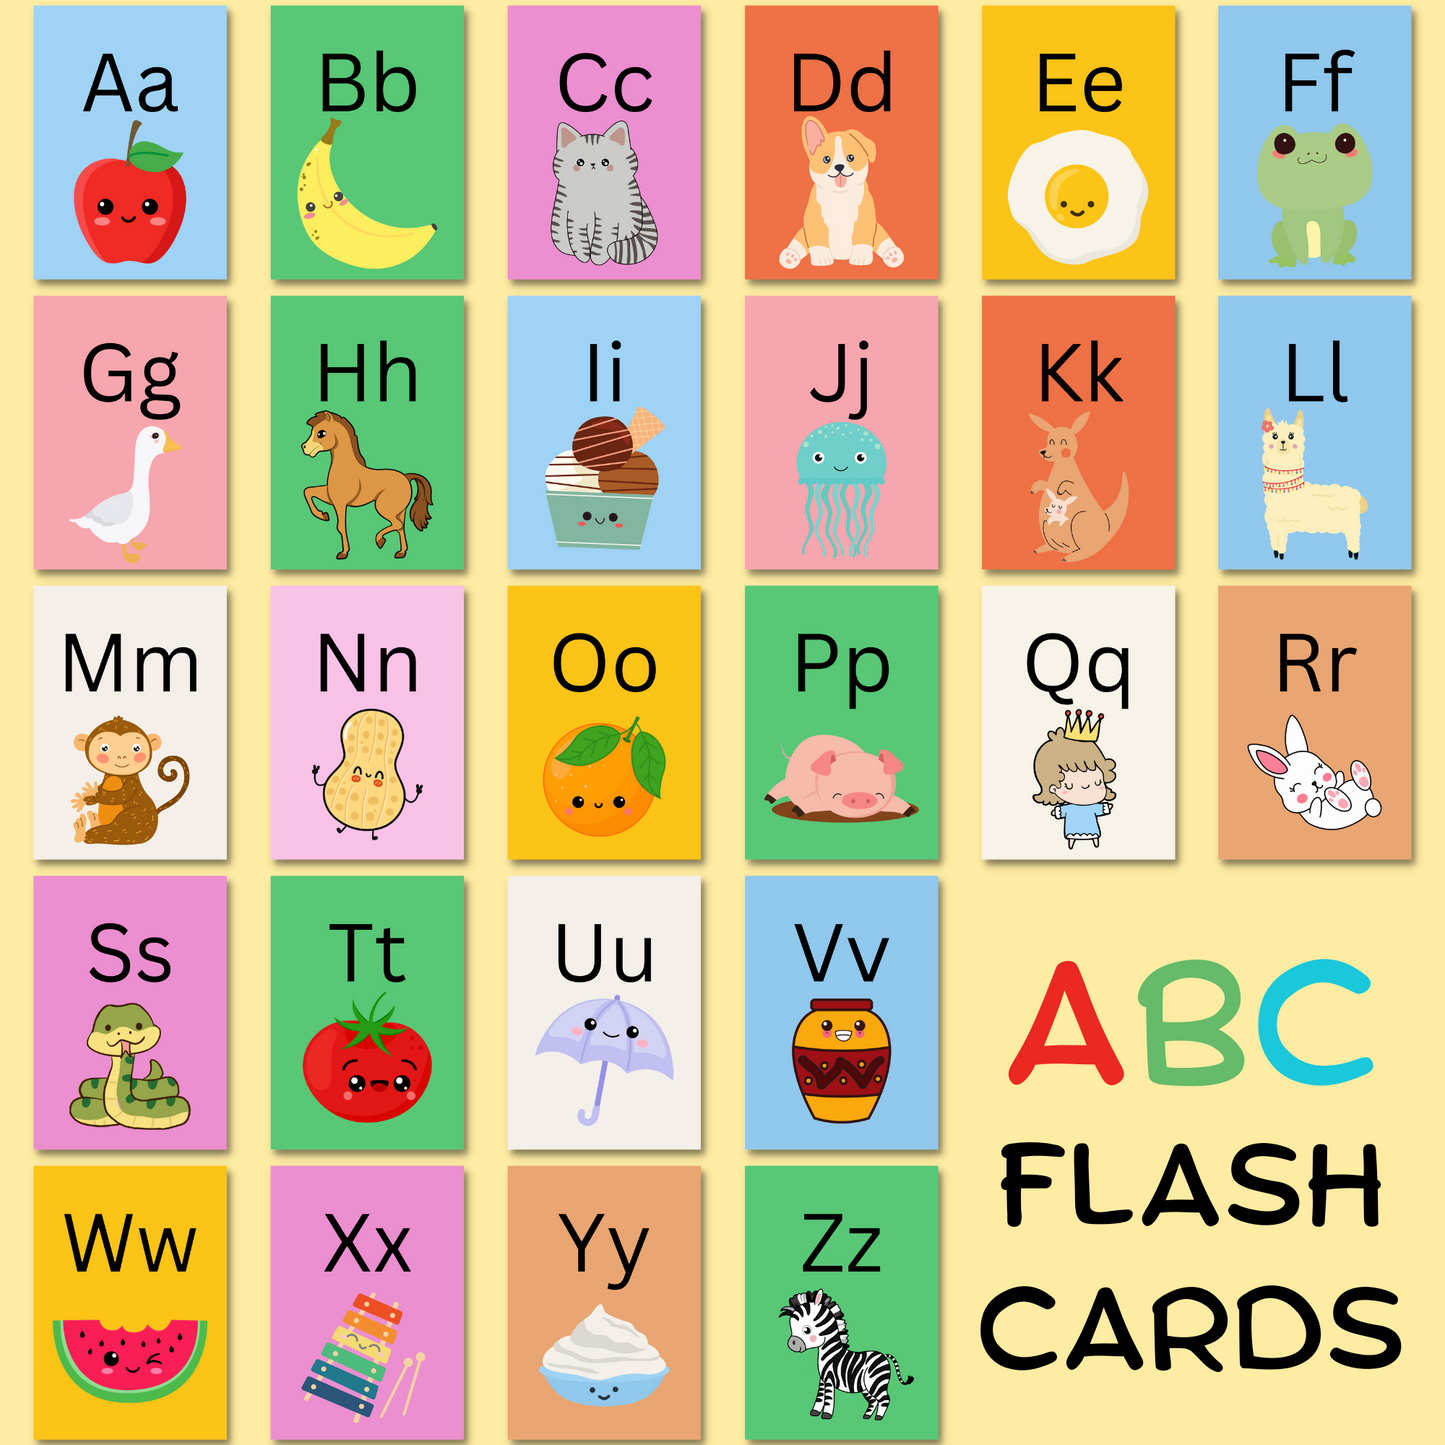 ABC Flash Card Pack